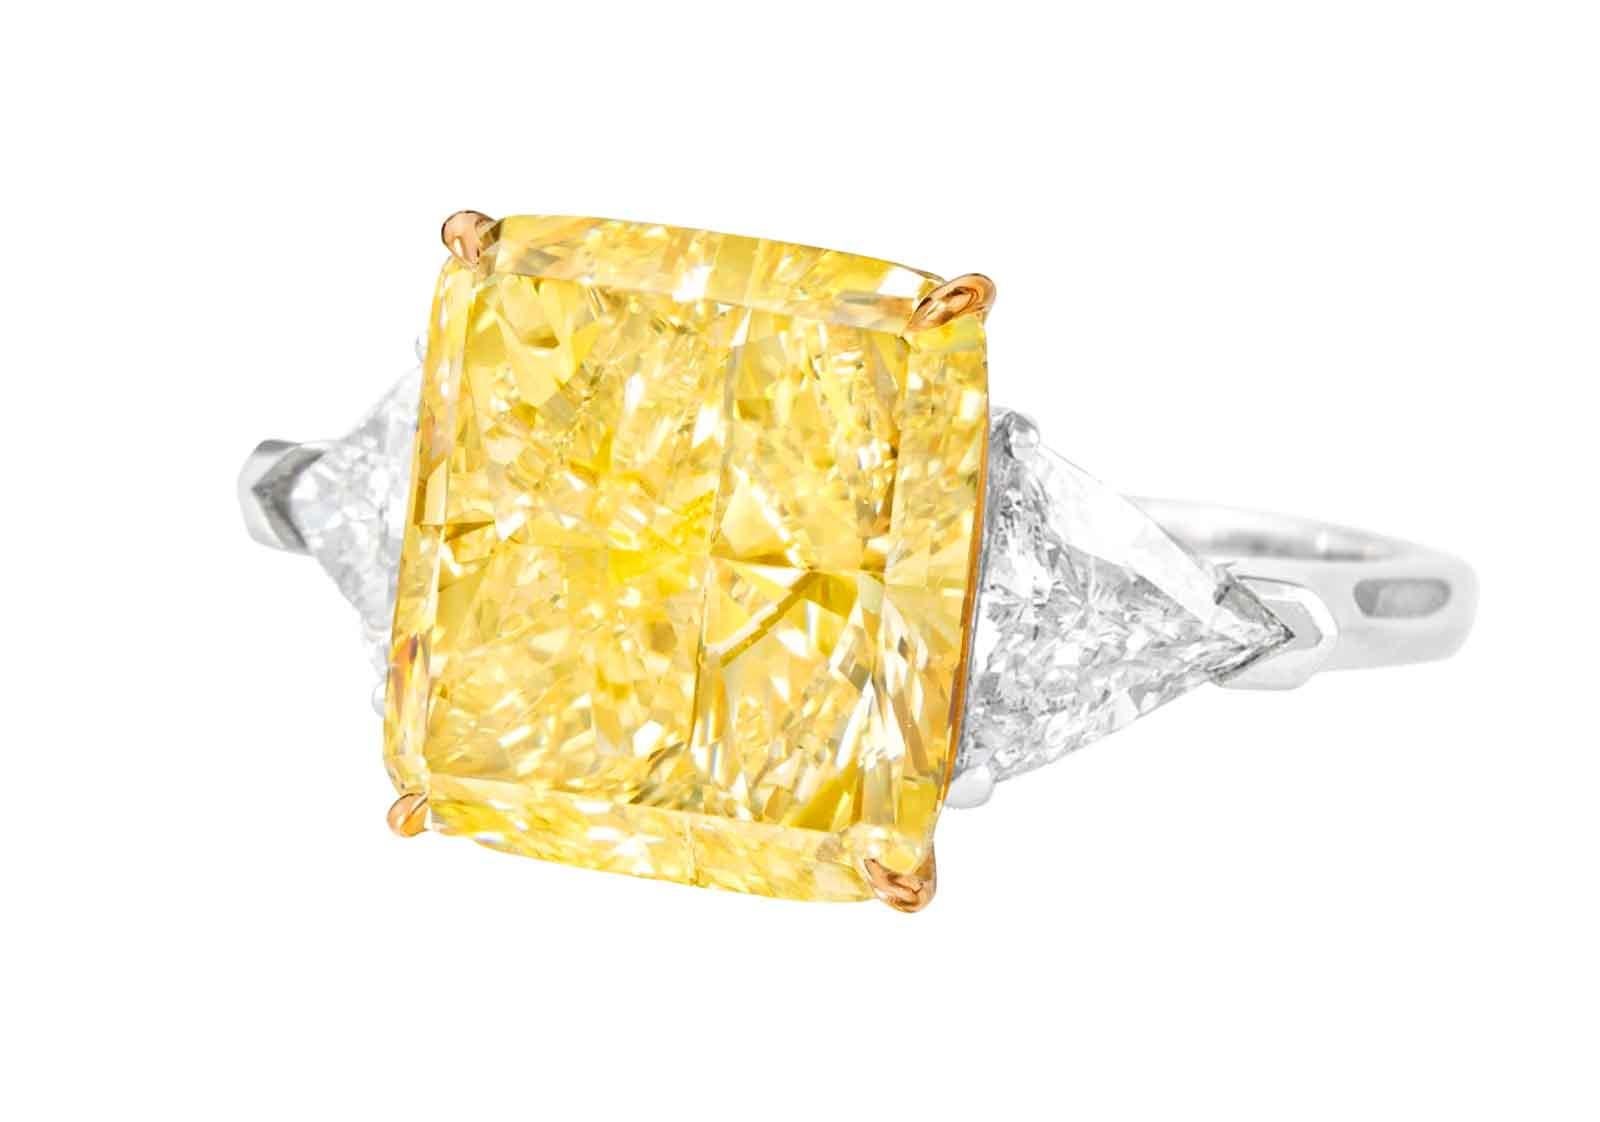 Im Mittelpunkt dieses luxuriösen Rings steht ein außergewöhnlicher 4.32-karätiger Cushion Modified-Diamant, ein Juwel von unübertroffener Anziehungskraft und Bedeutung. Dieser vom Gemological Institute of America (GIA) zertifizierte Diamant hat eine